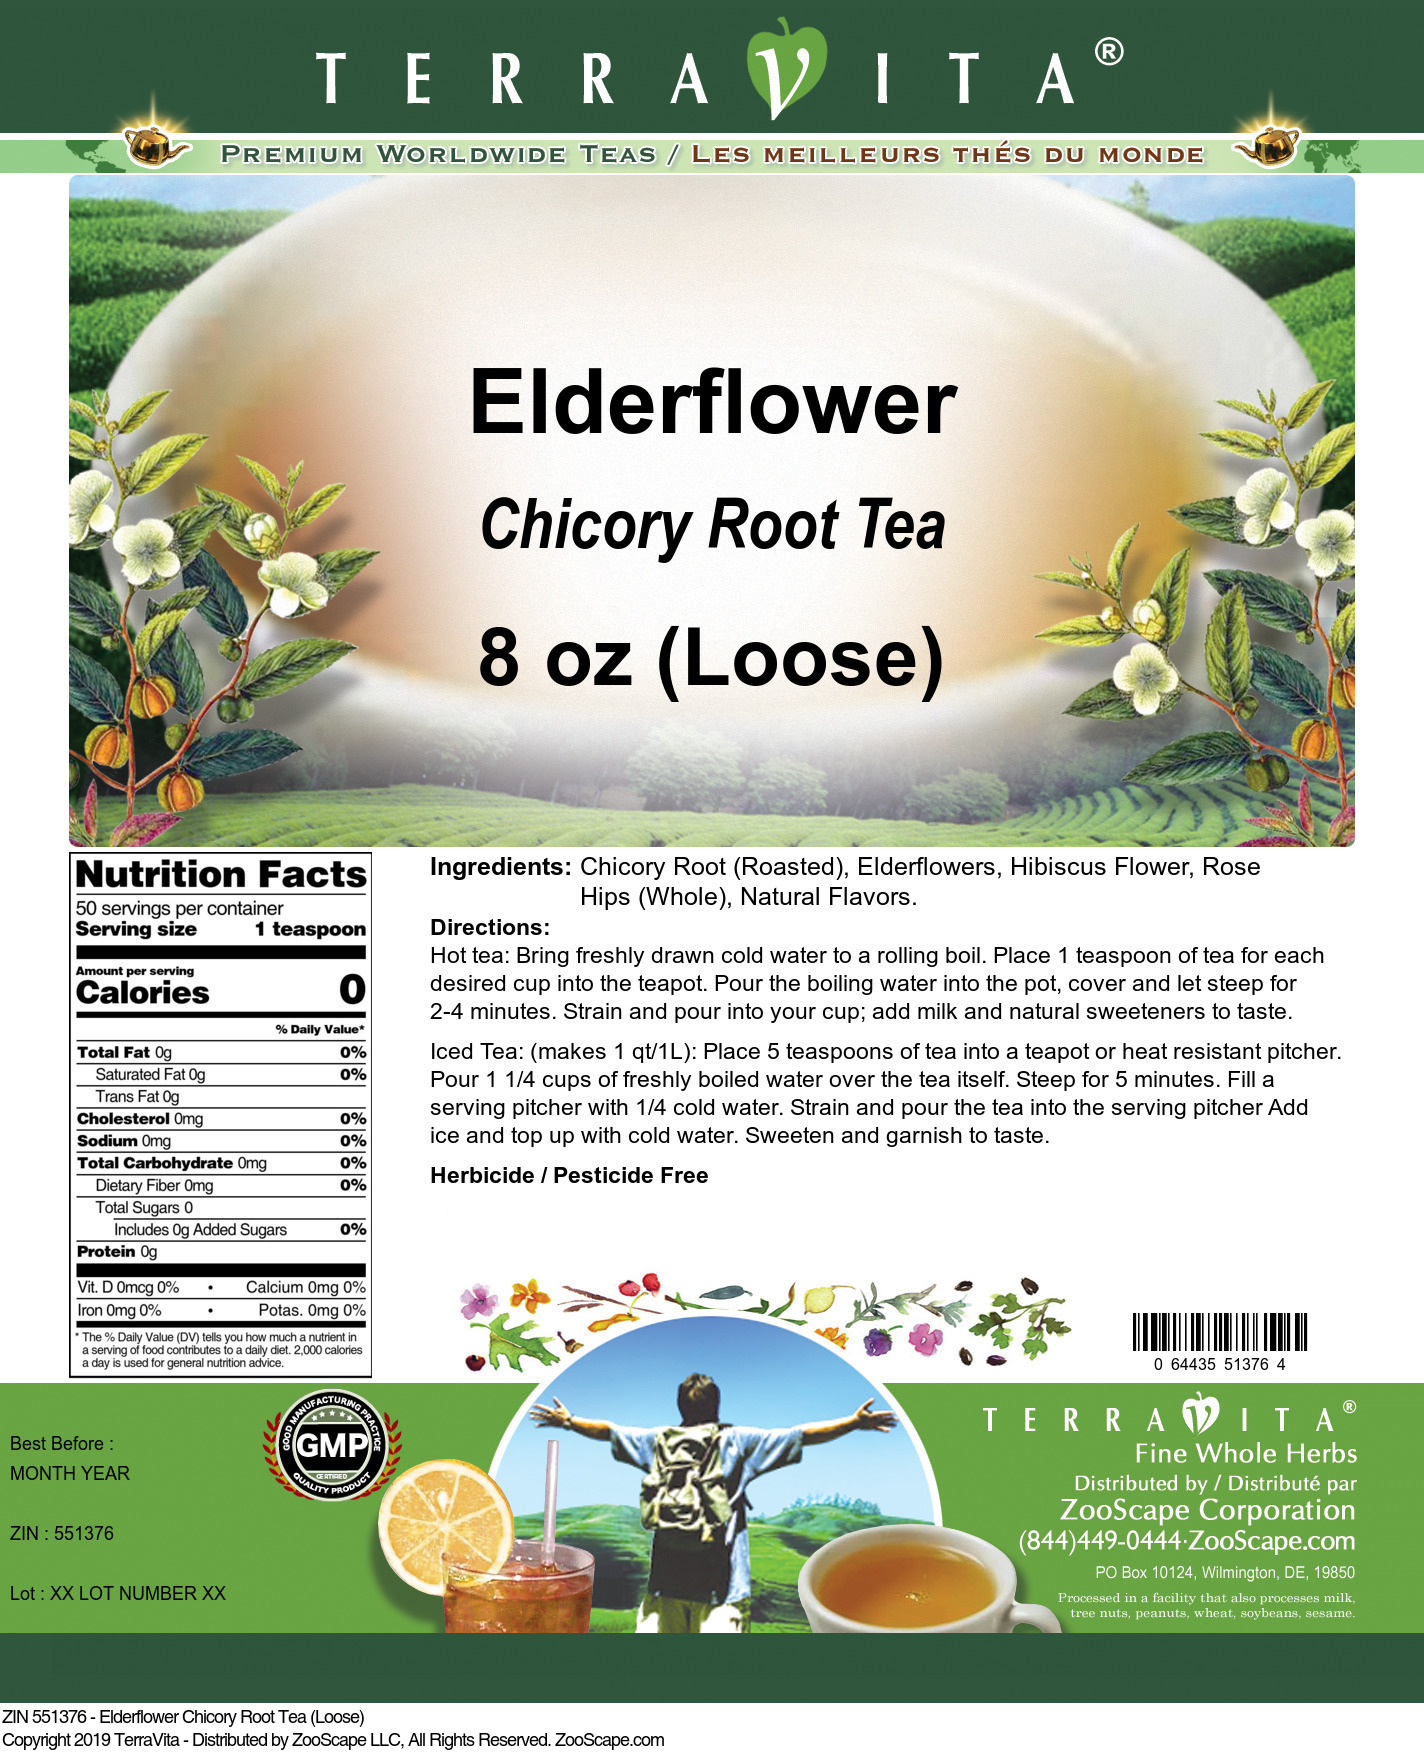 Elderflower Chicory Root Tea (Loose) - Label